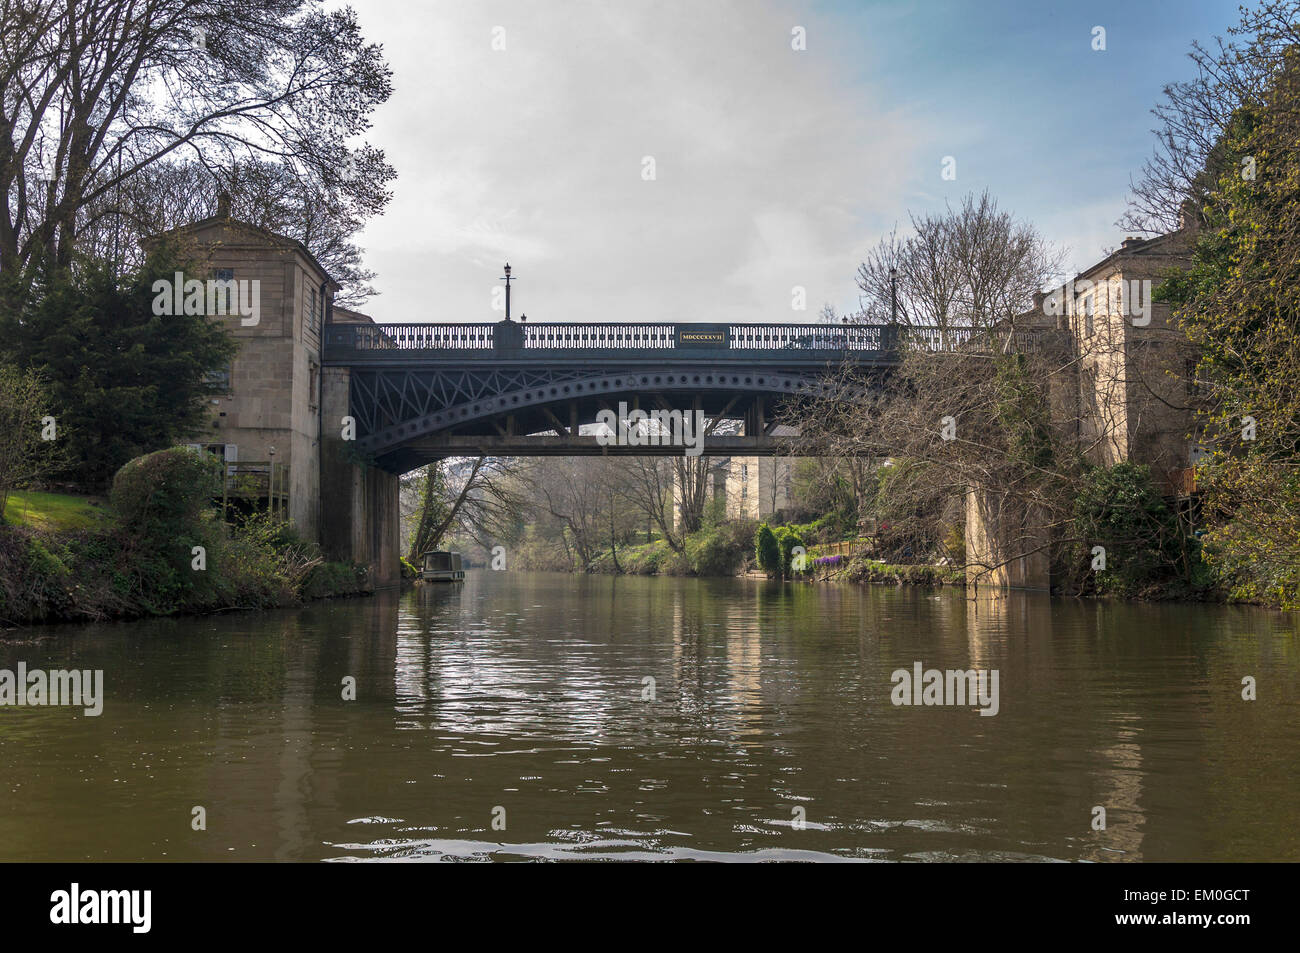 Cleveland ponte sopra il fiume Avon a Bath Somerset England Regno Unito Foto Stock